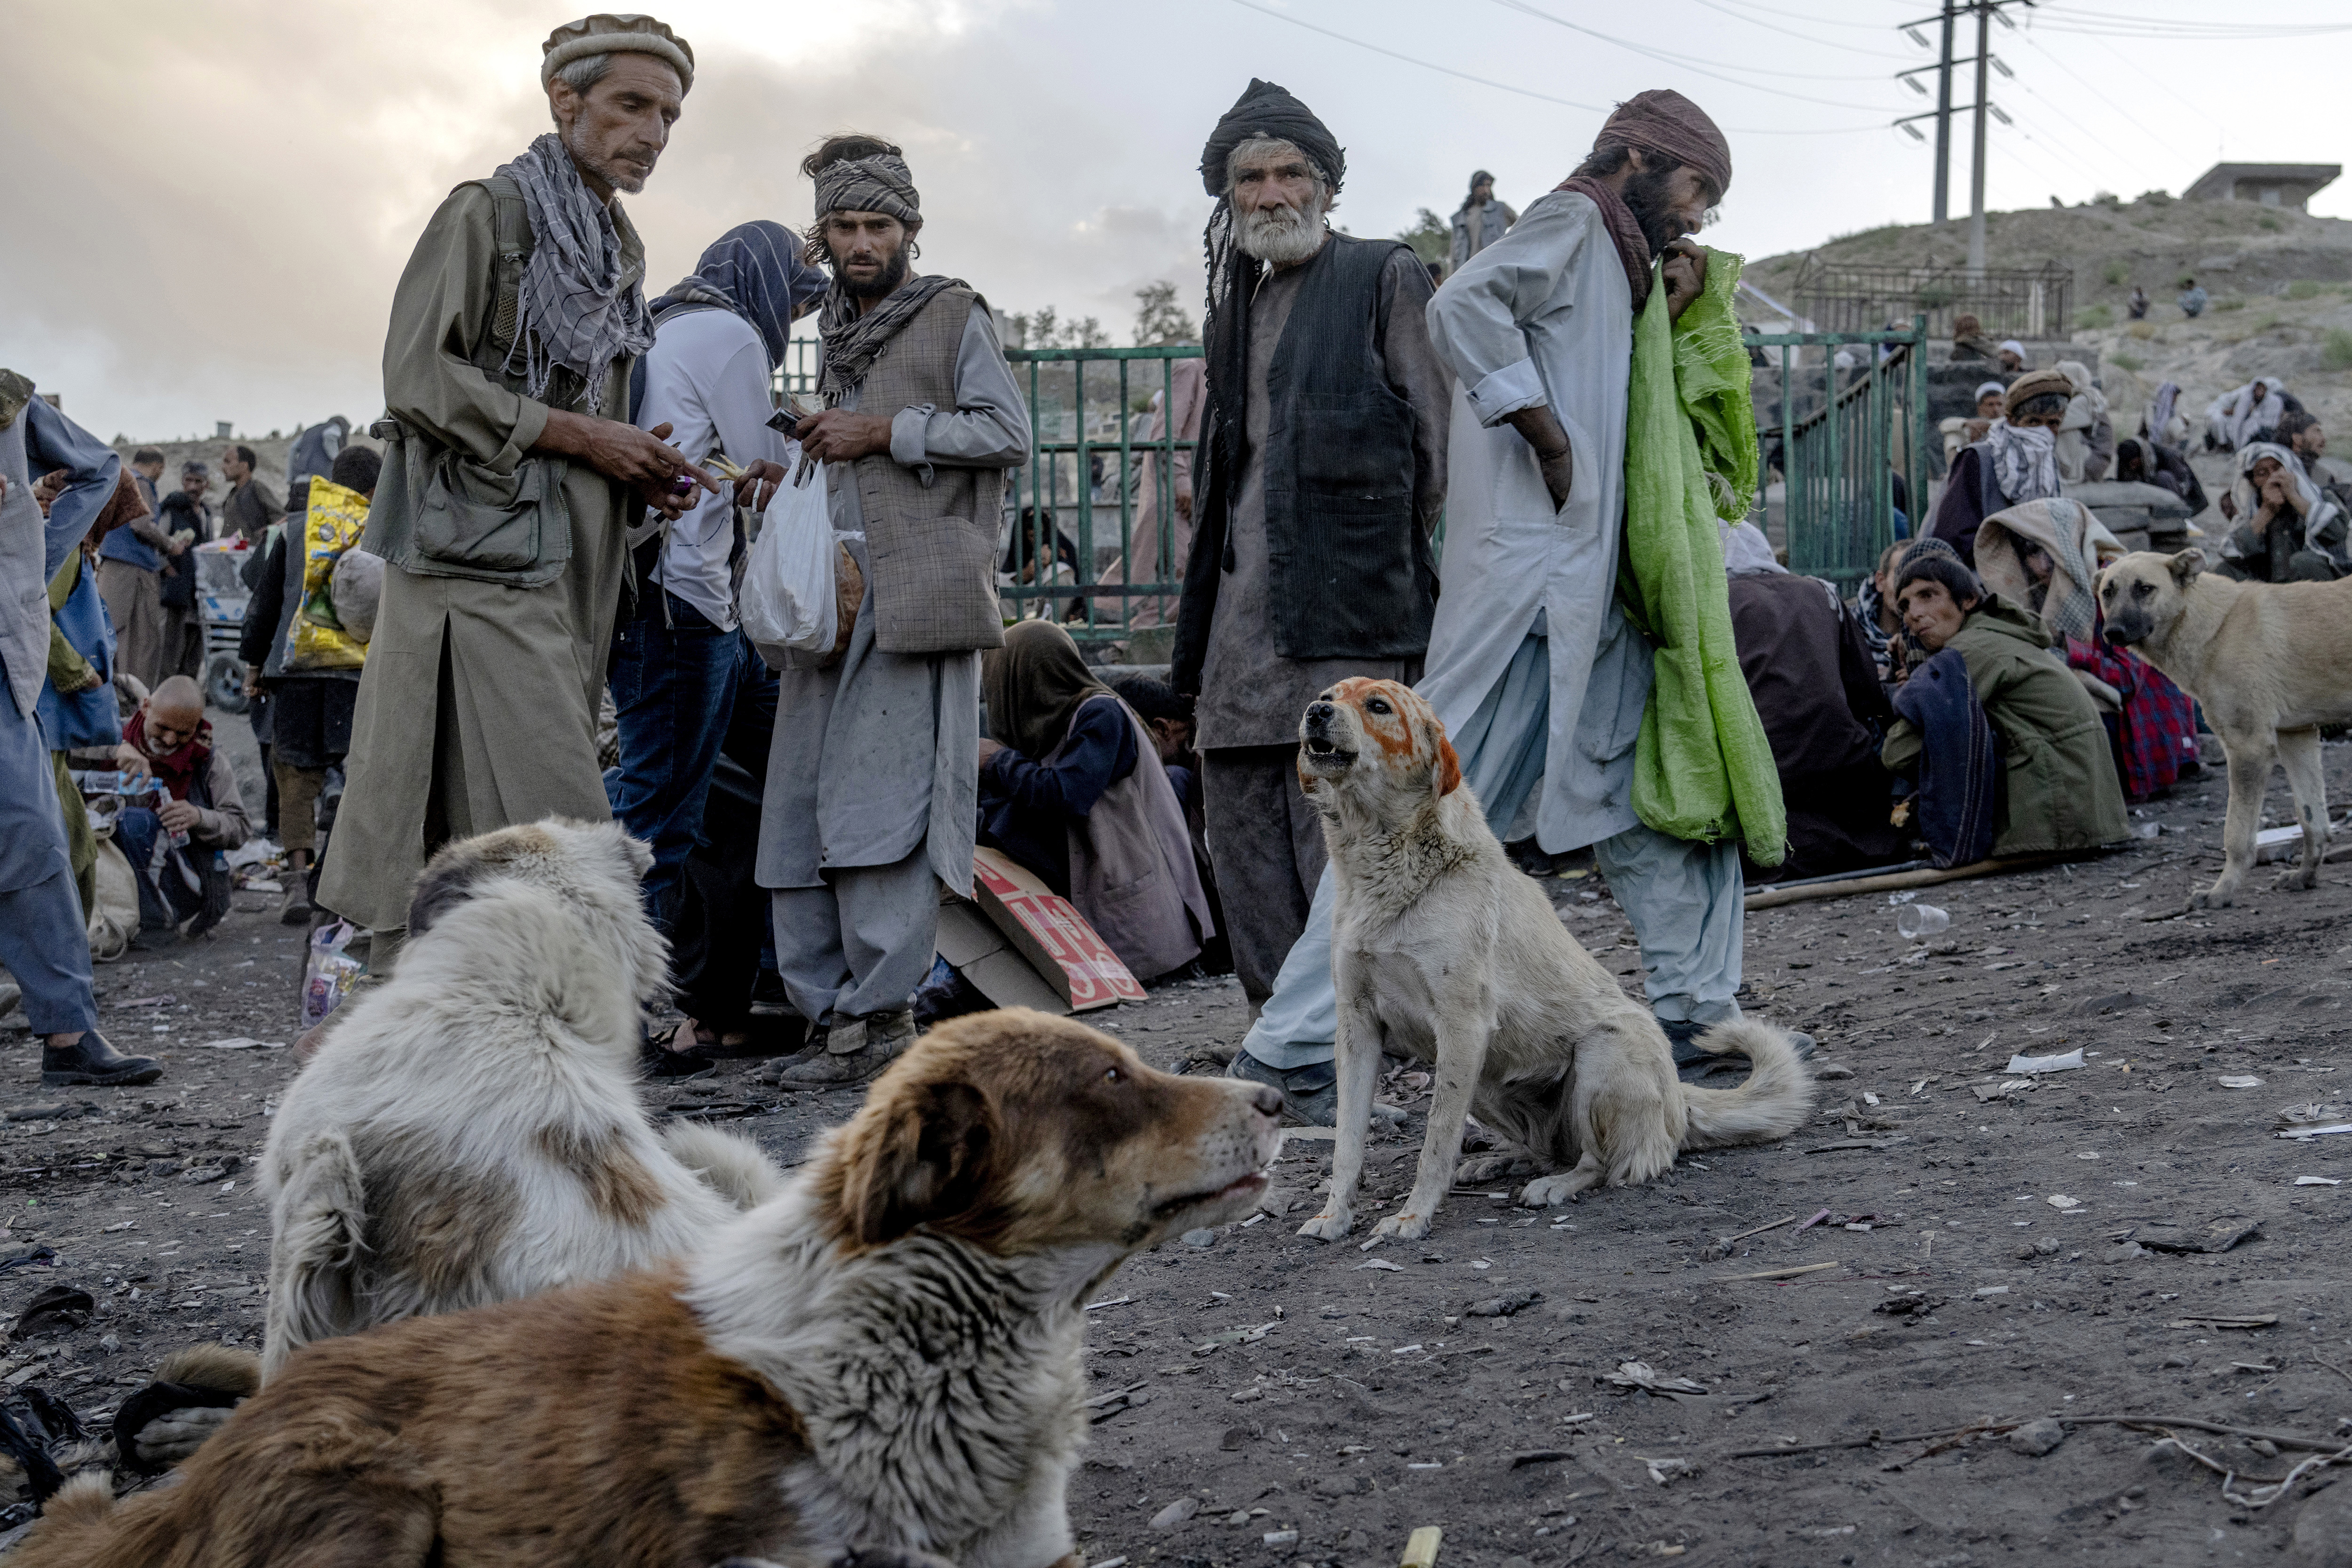 La situación no ha hecho más que empeorar desde que la economía del país se derrumbó tras la toma del poder por los talibanes en agosto (AP Photo/Ebrahim Noroozi)